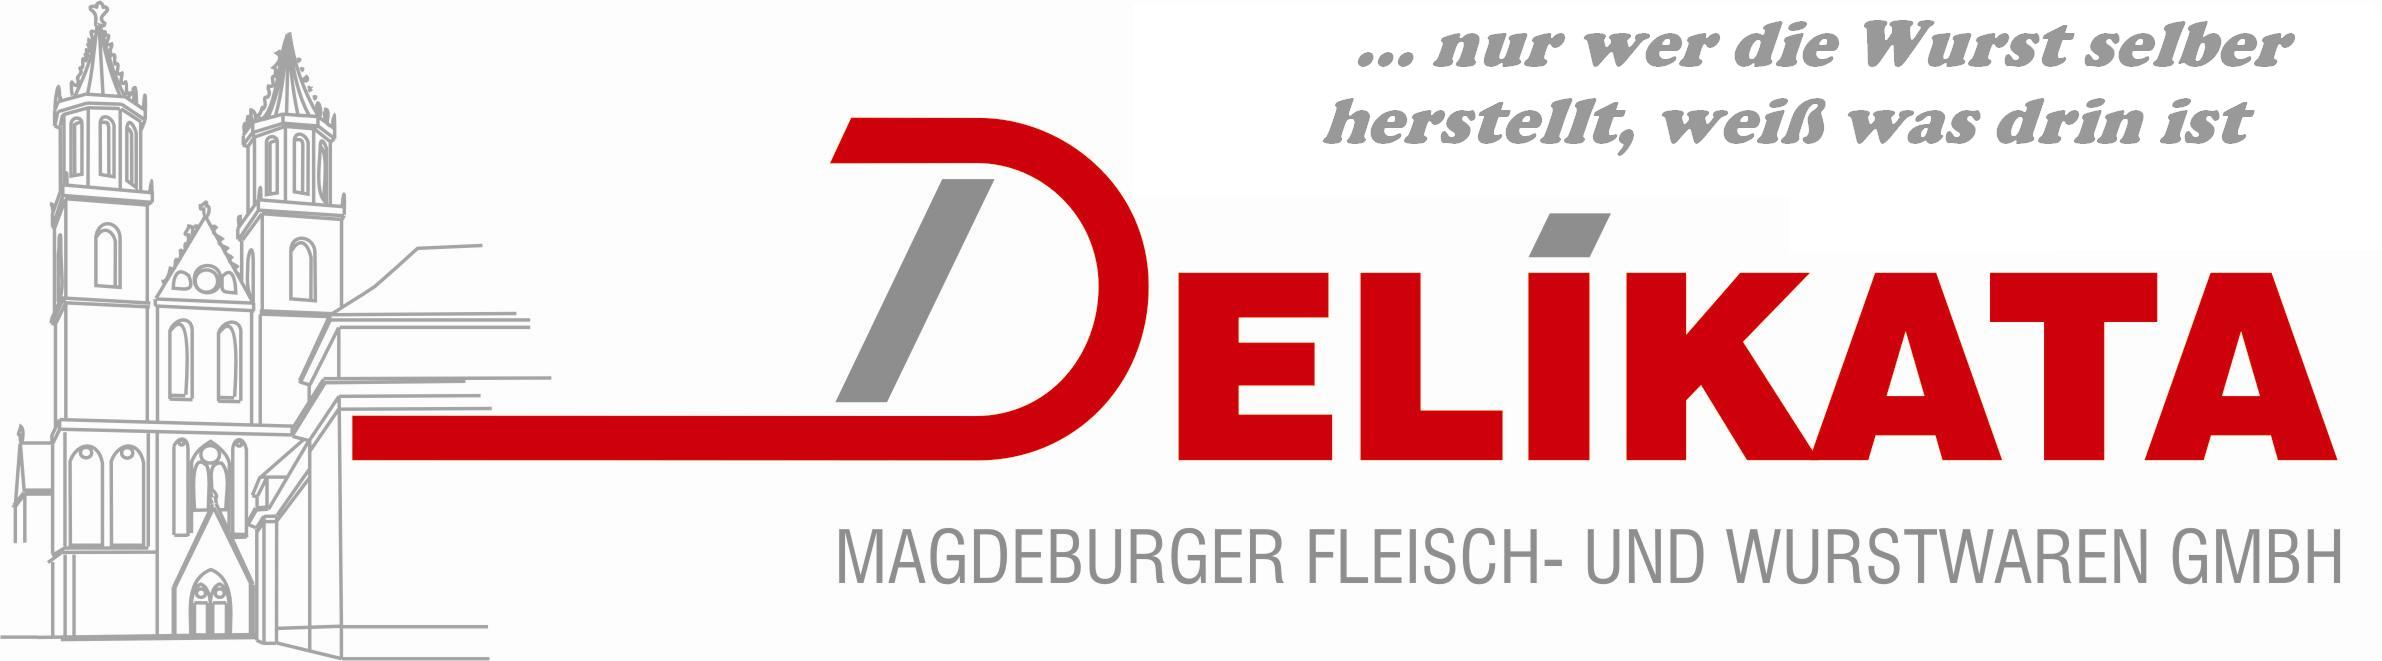 DELIKATA Magdeburger Fleisch und Wurstwaren GmbH